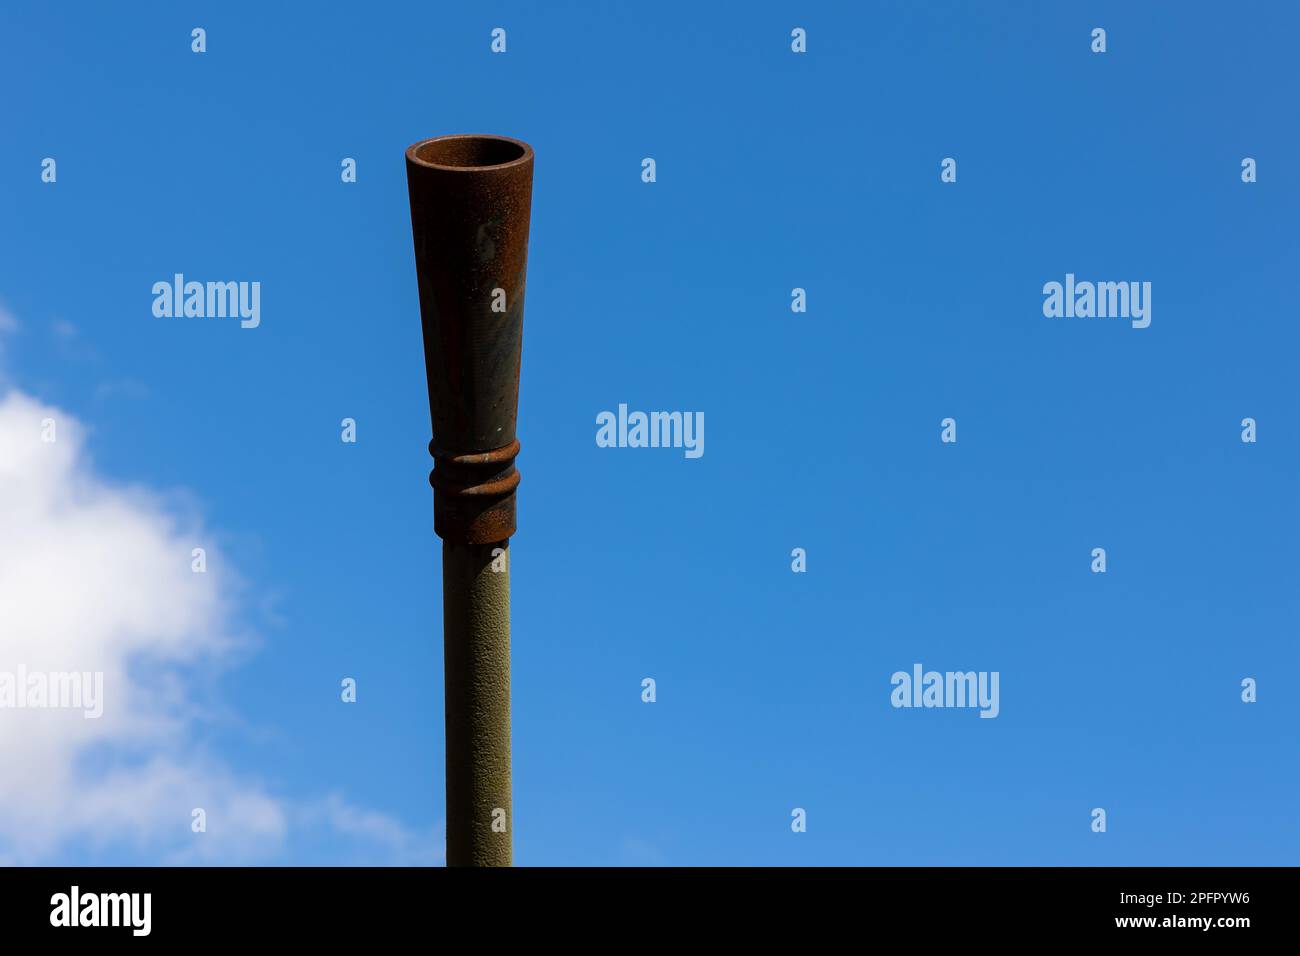 La museruola di una pistola antiaerea contro il cielo blu. Elementi di difesa aerea durante la seconda guerra mondiale Foto Stock